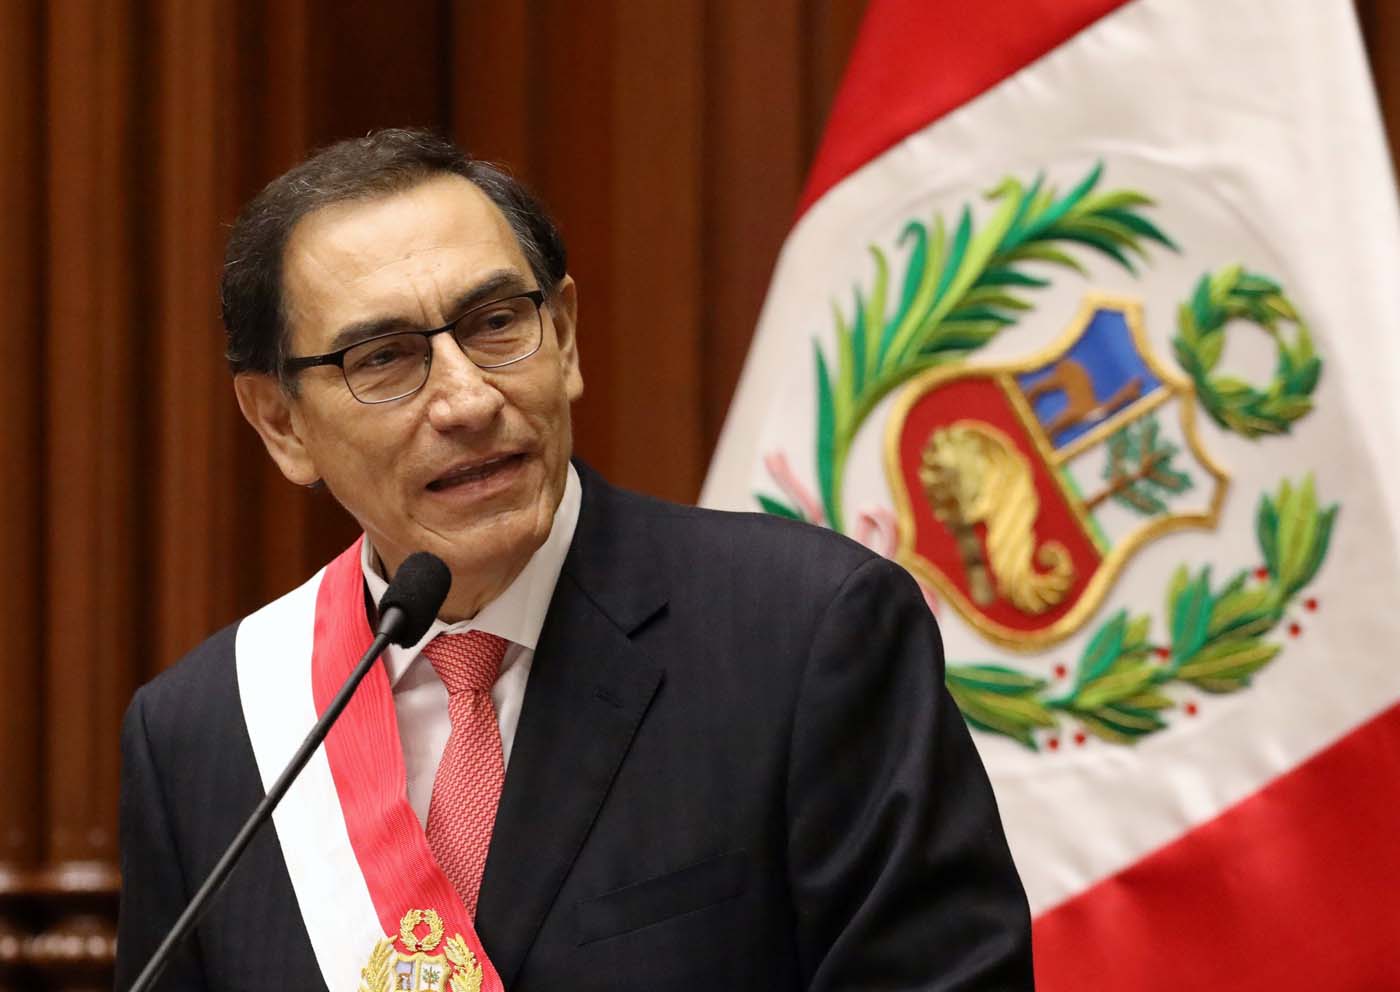 Nuevo presidente de Perú tomará juramento este lunes a su gabinete de ministros